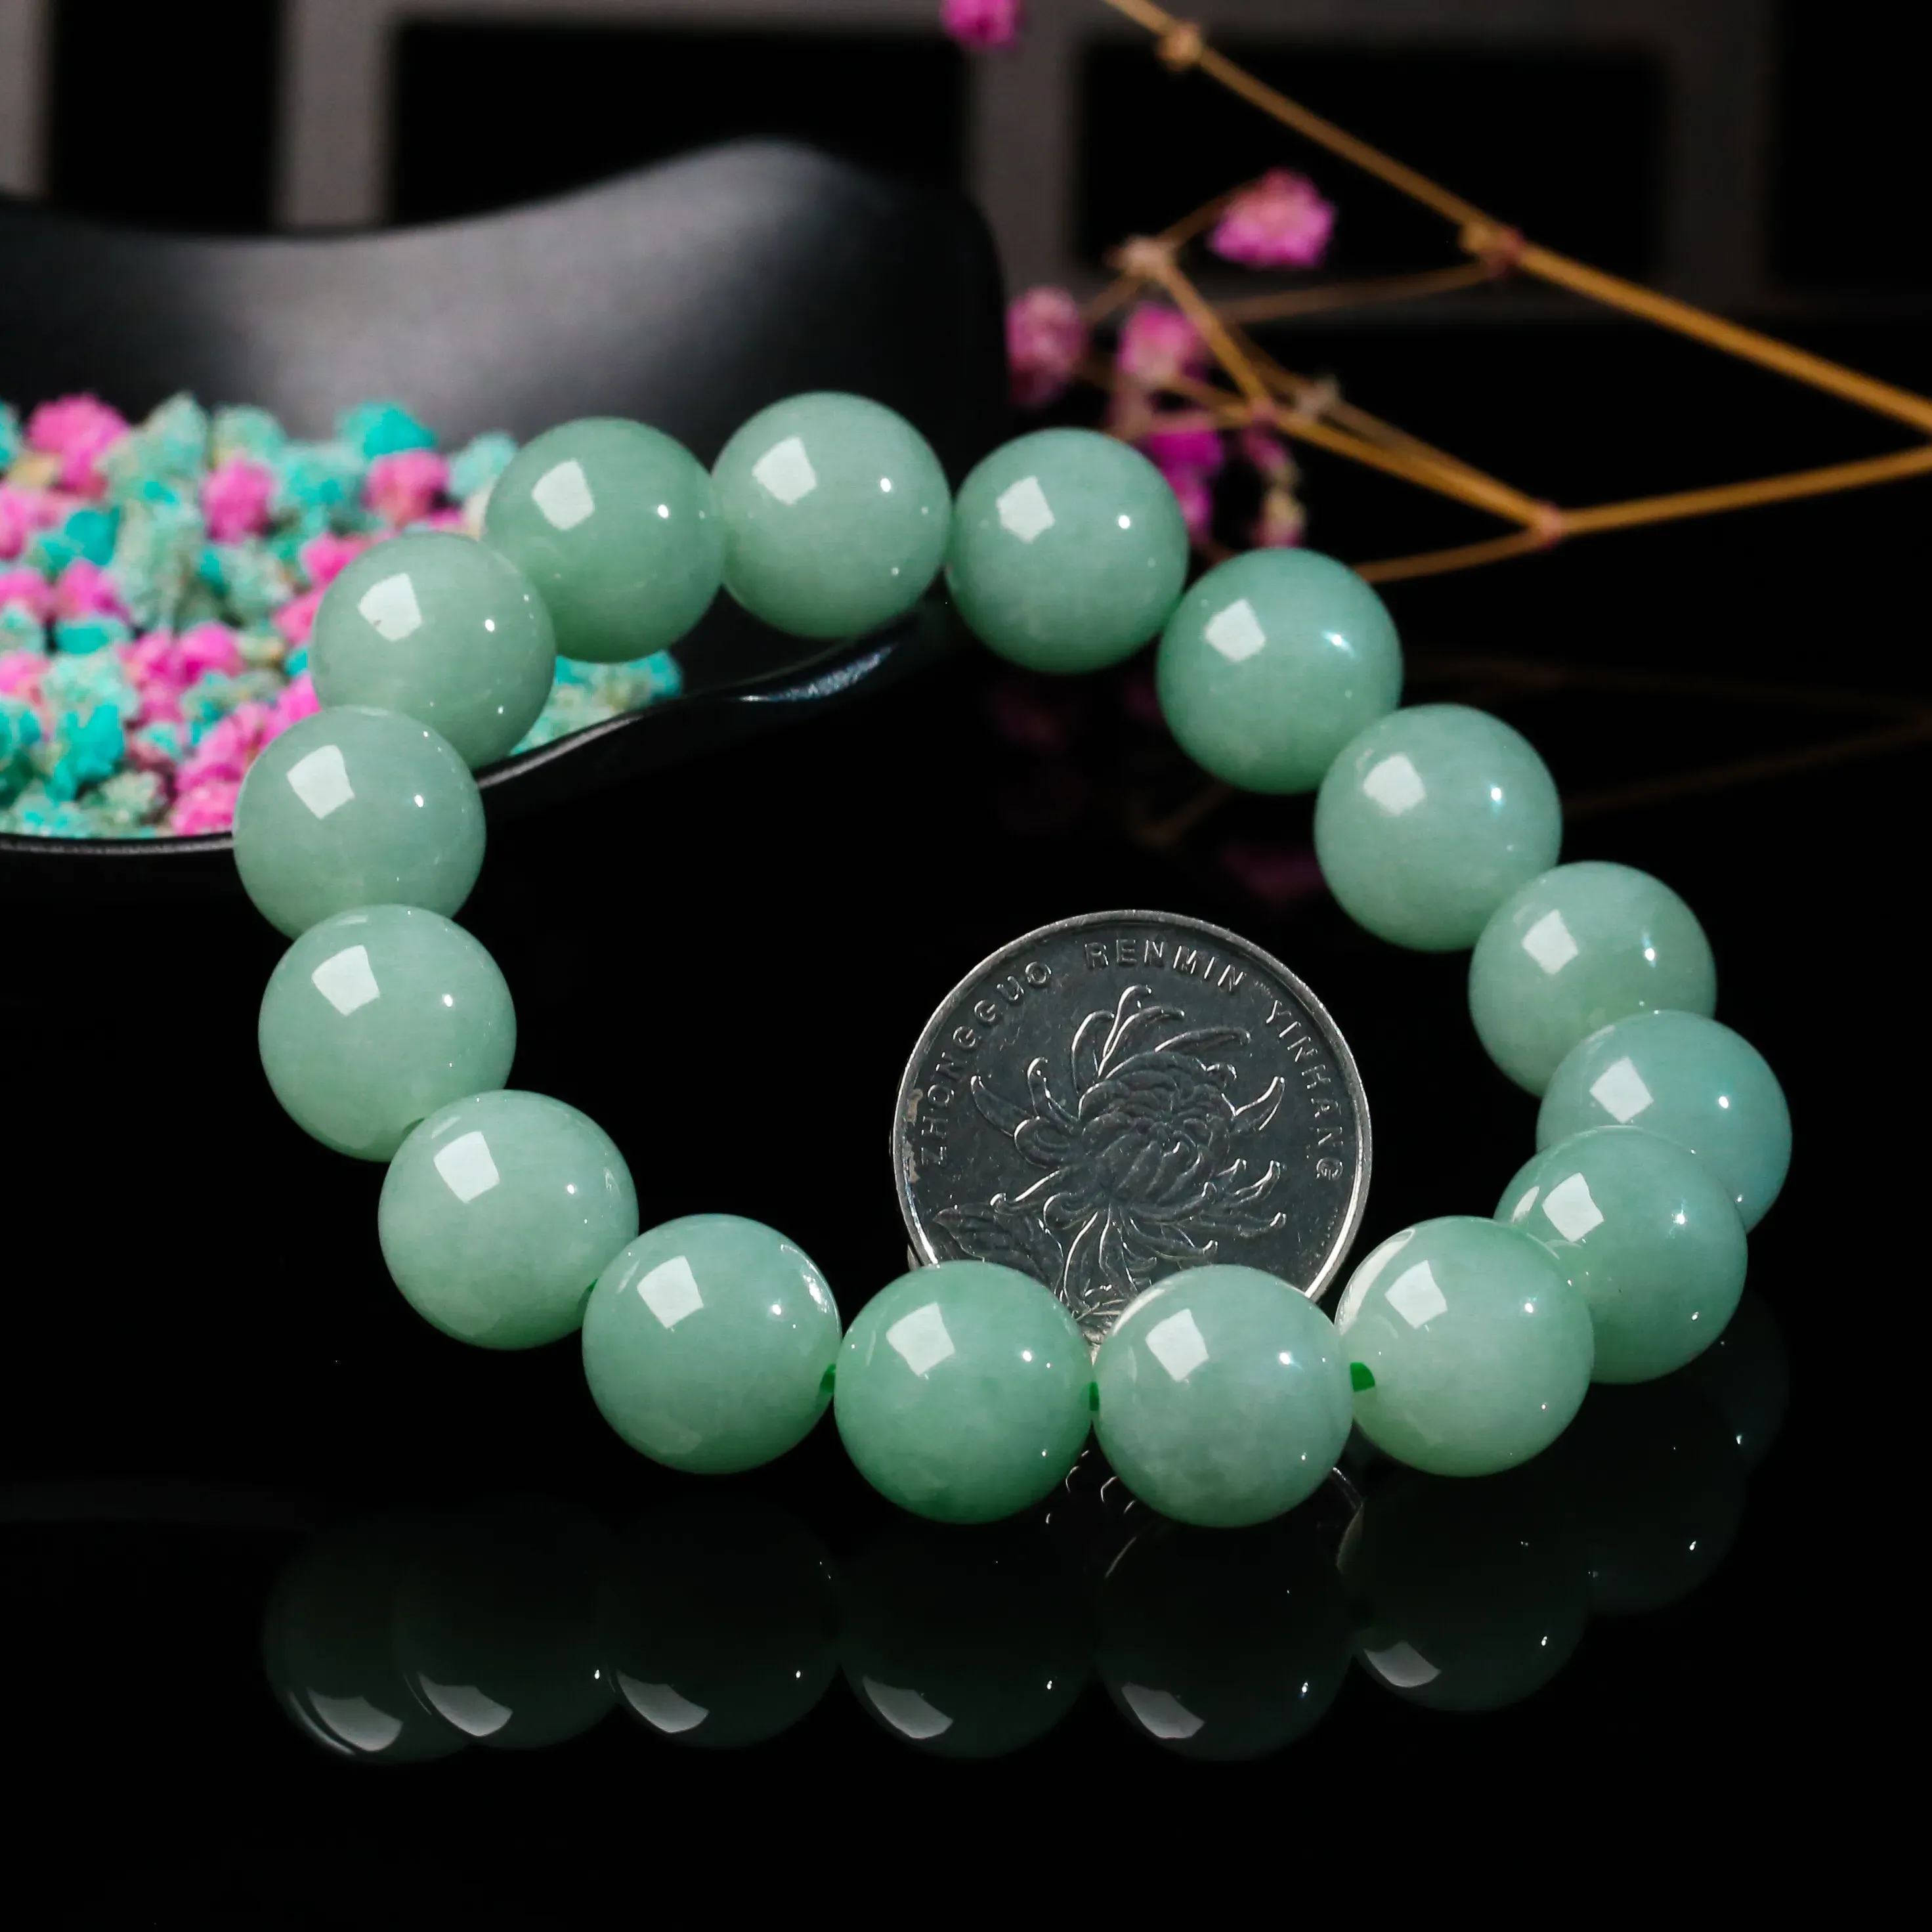  翡翠圆珠手串，共16颗珠子，取其中一颗珠尺寸大约13.3mm，亮丽秀气，饱满圆润，上手佩戴 贵气时尚 。